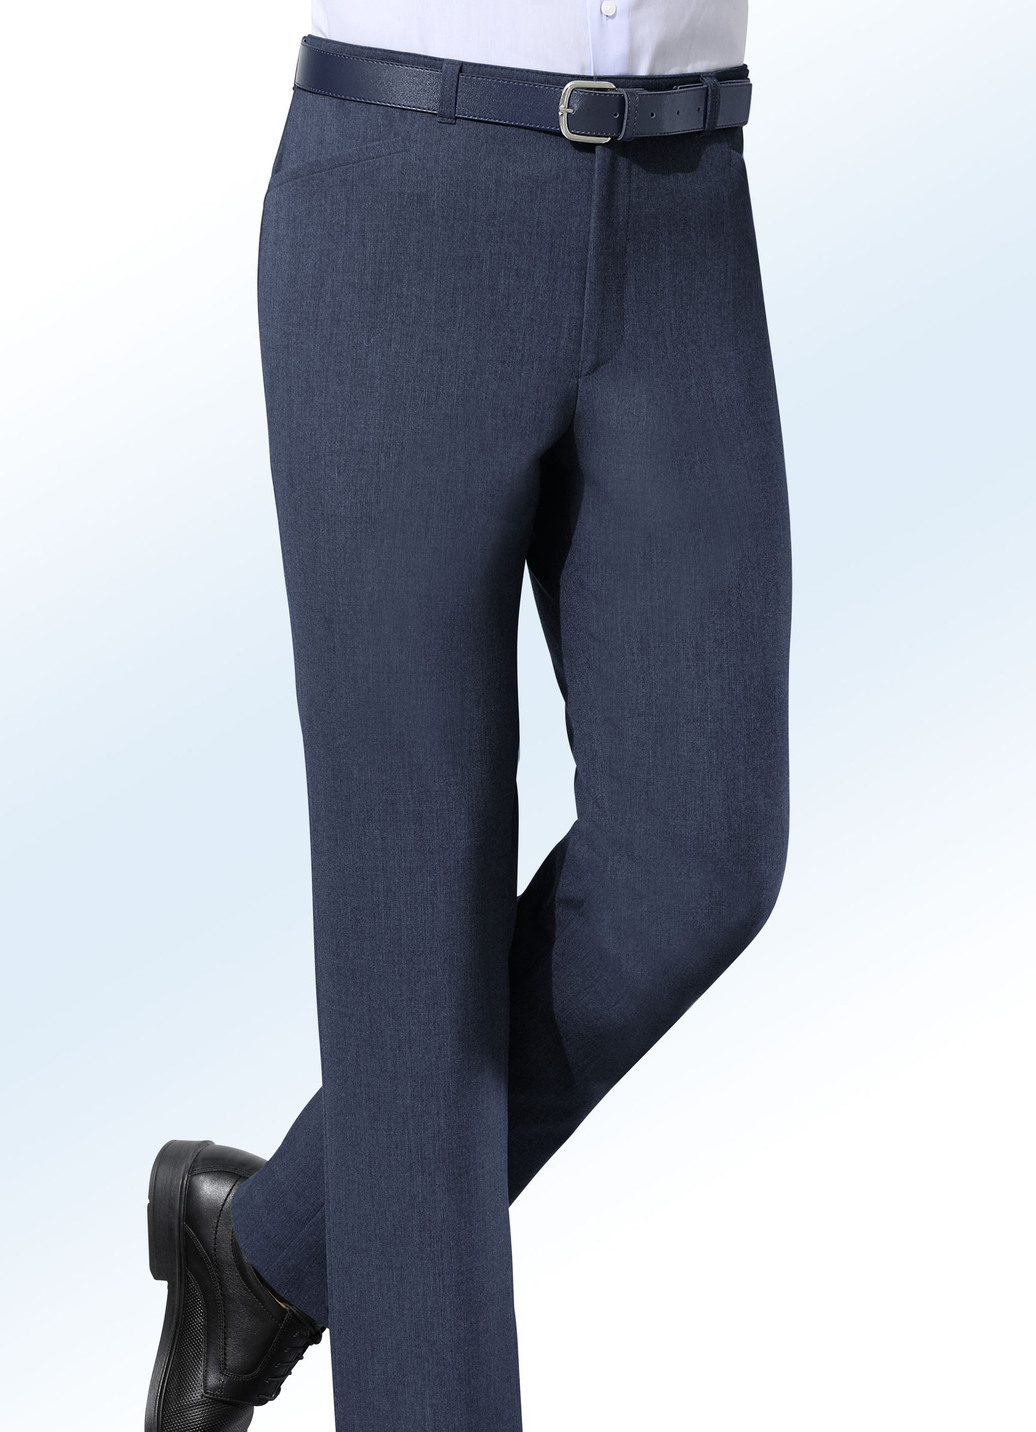 "Klaus-Modelle"-Hose mit Gürtel in 5 Farben, Marine, Größe 26 von KLAUS MODELLE